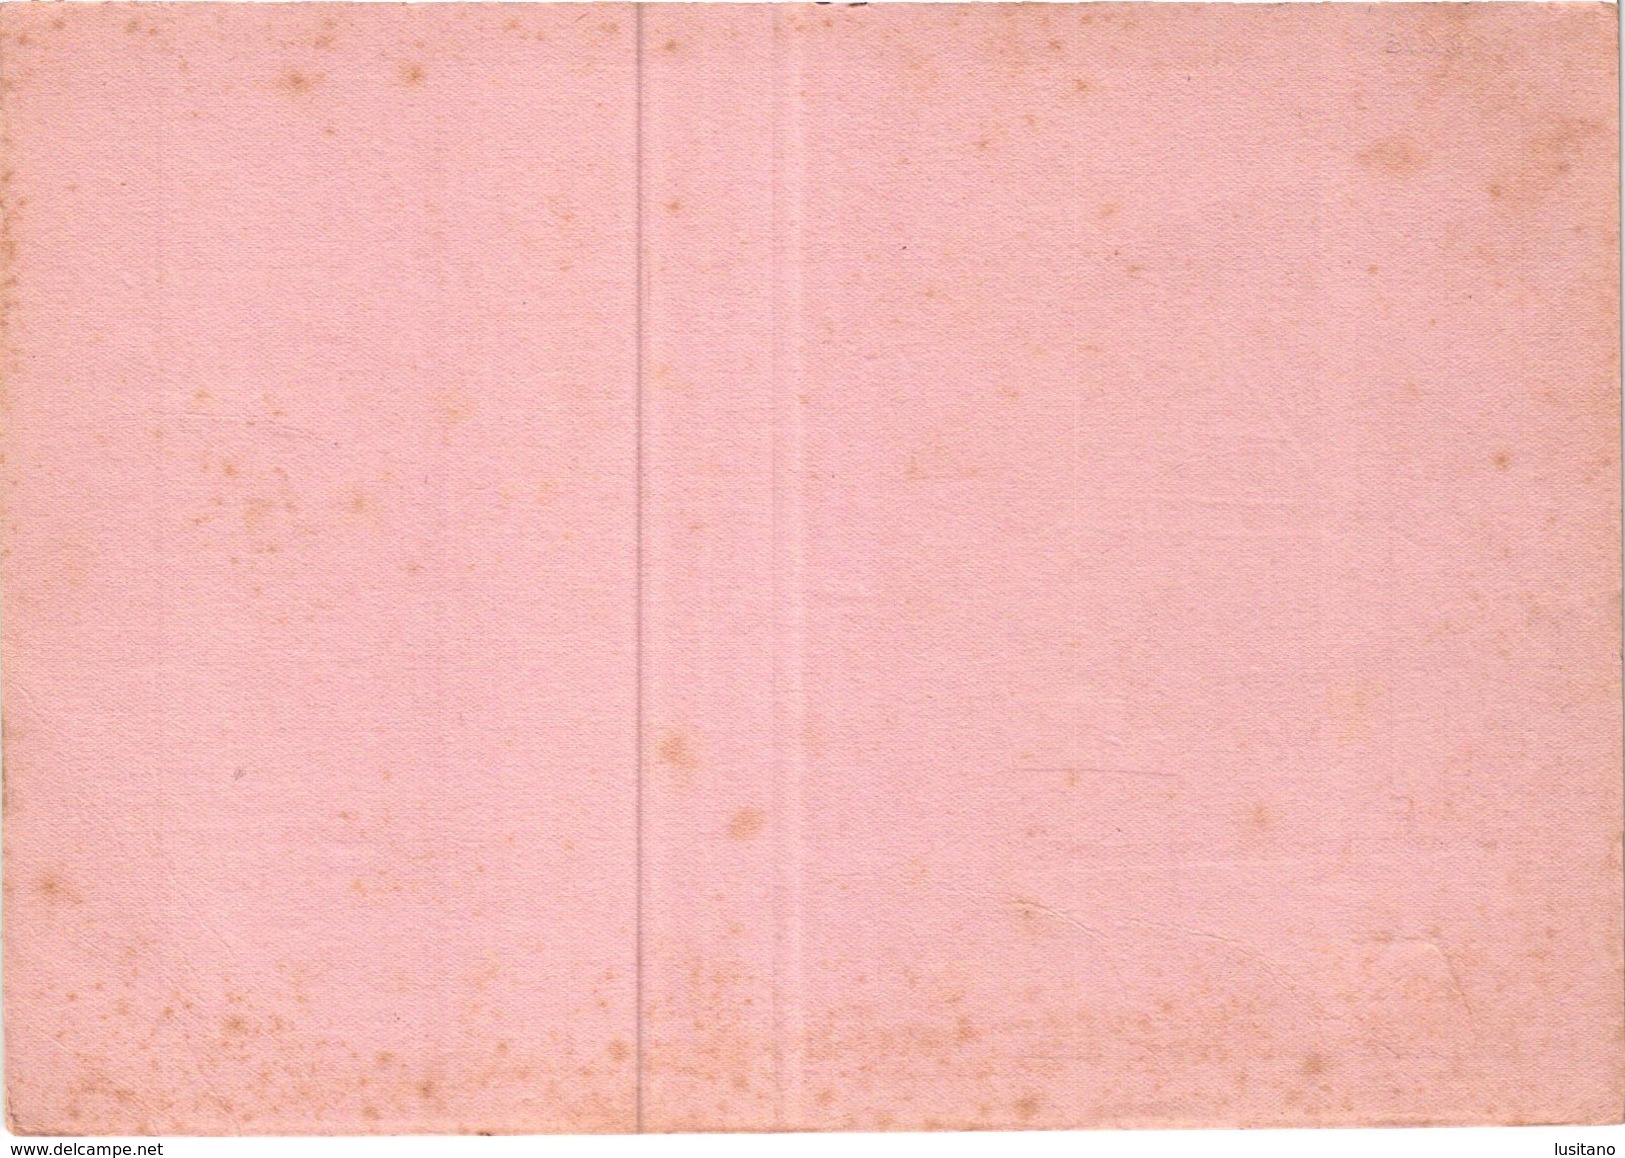 PORTUGAL MATA BORRAO BUVARD BLOTTER  21.2 X 14.5 CMS - 1941  MERCK MEDECINE ADVERTISING - Pinturas